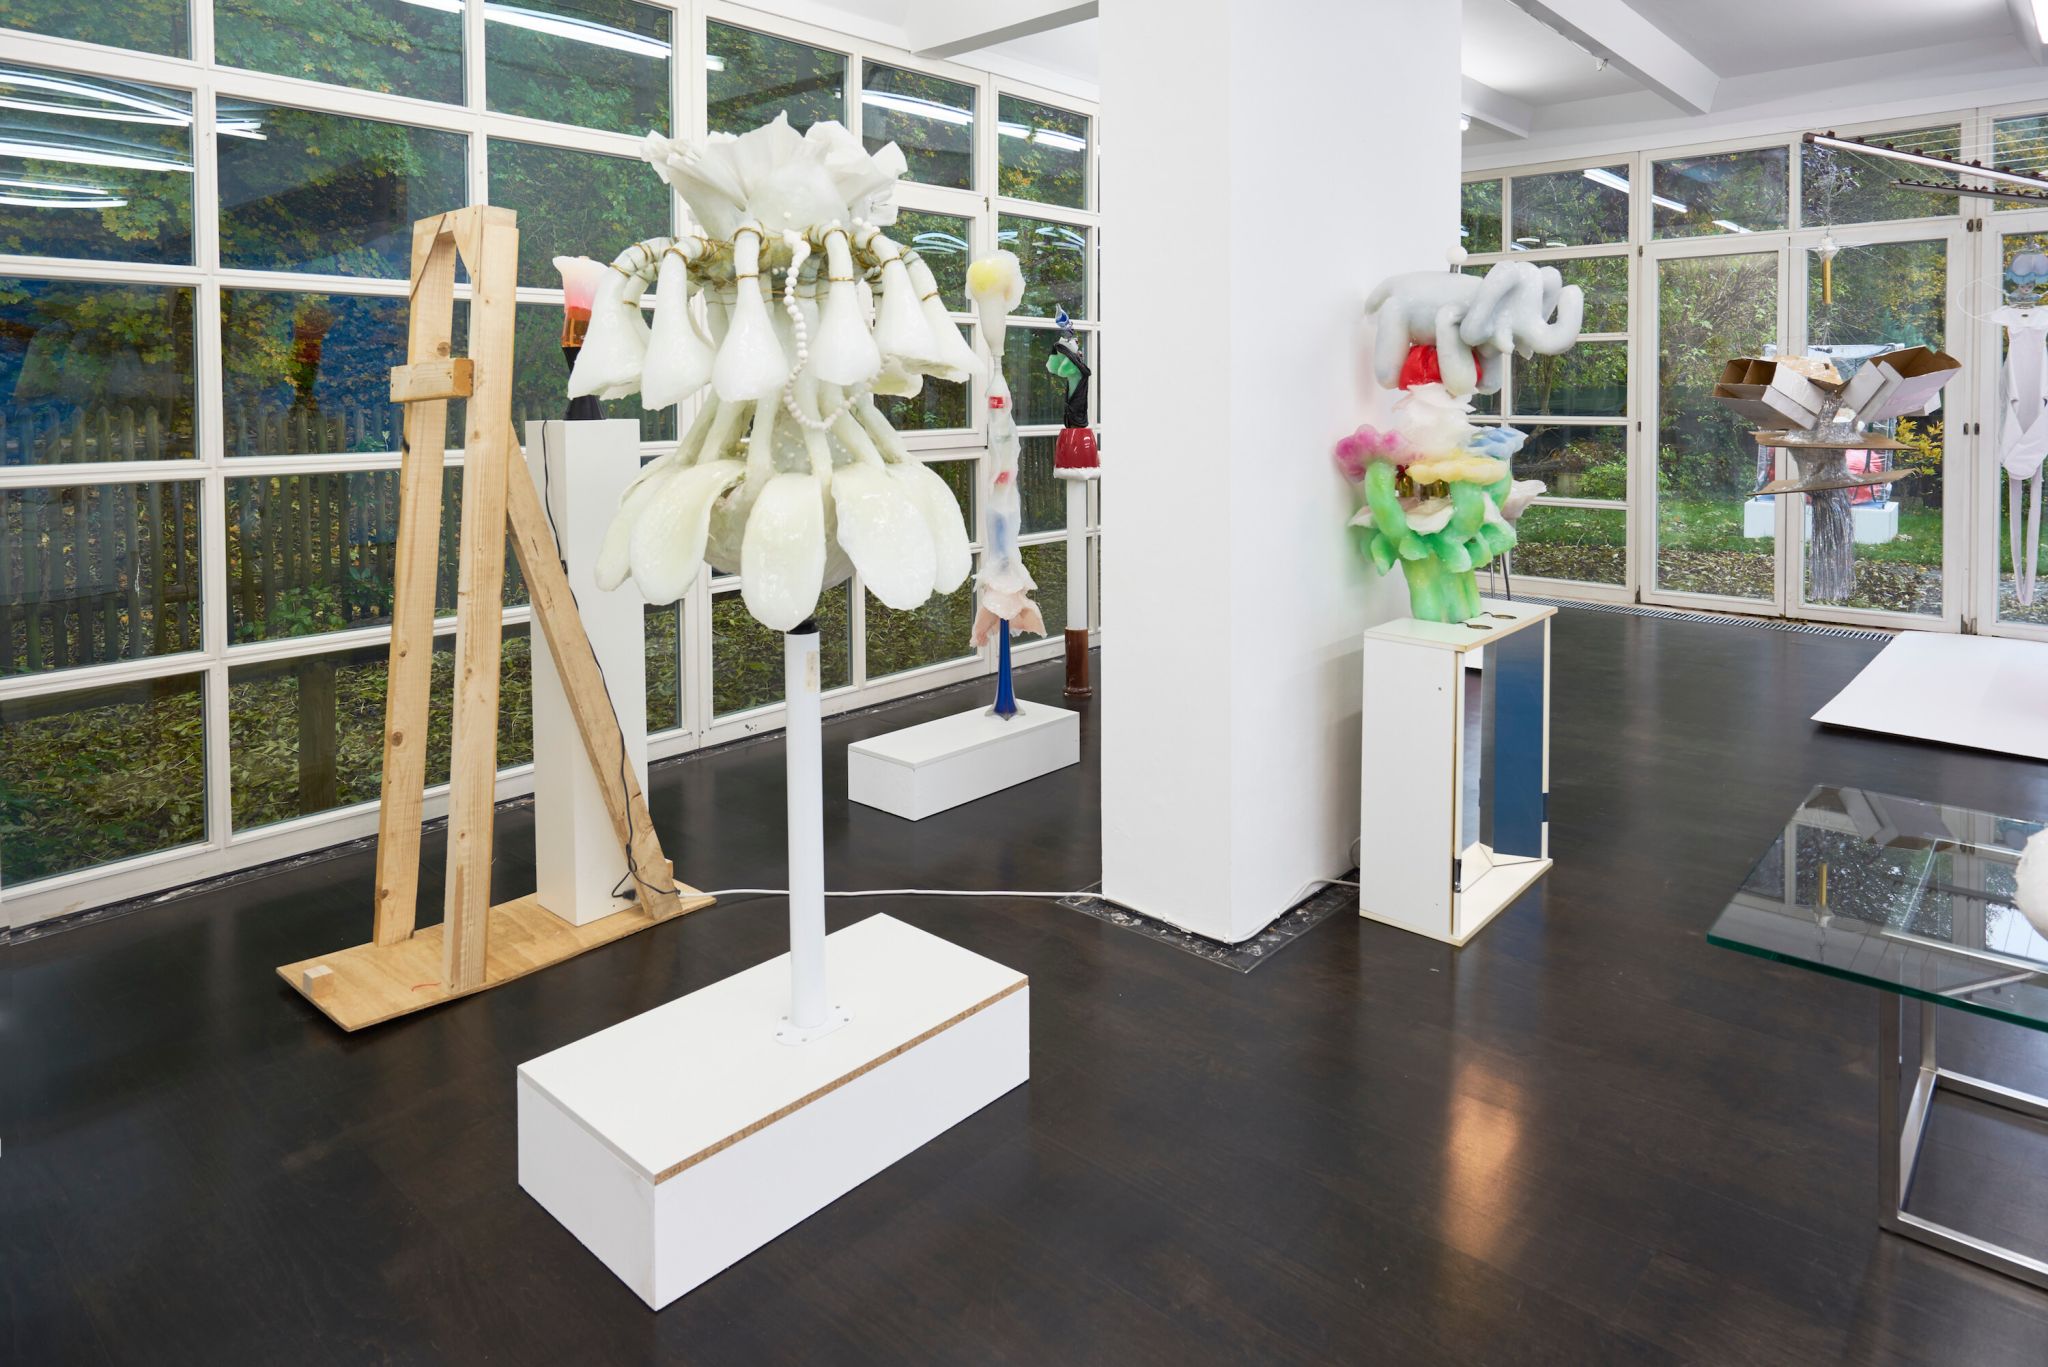 Installation view, Eric Sidner, Der blonde Affe, Deborah Schamoni, 2016